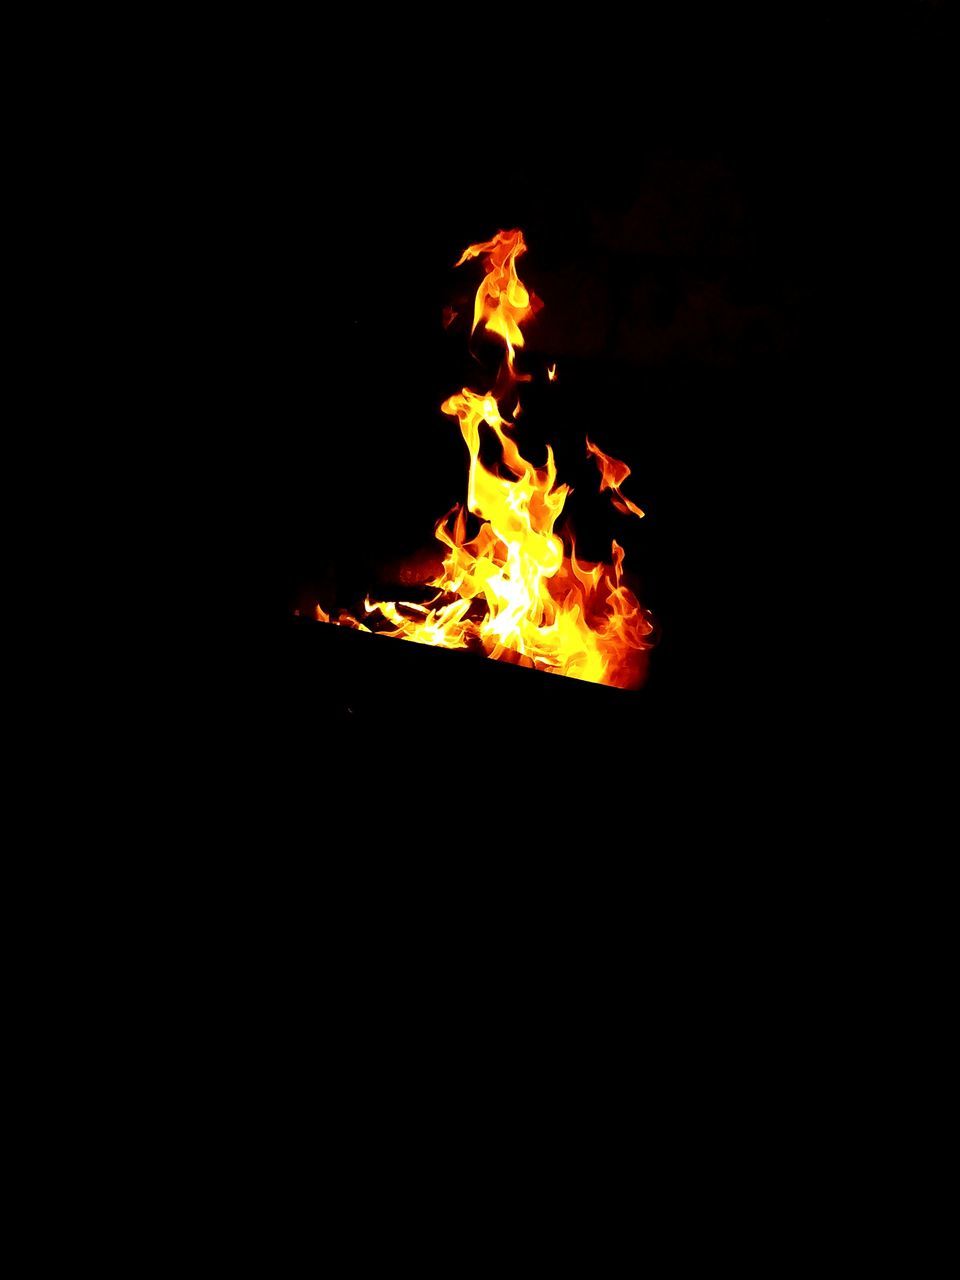 BONFIRE ON WOODEN FIRE IN THE DARK